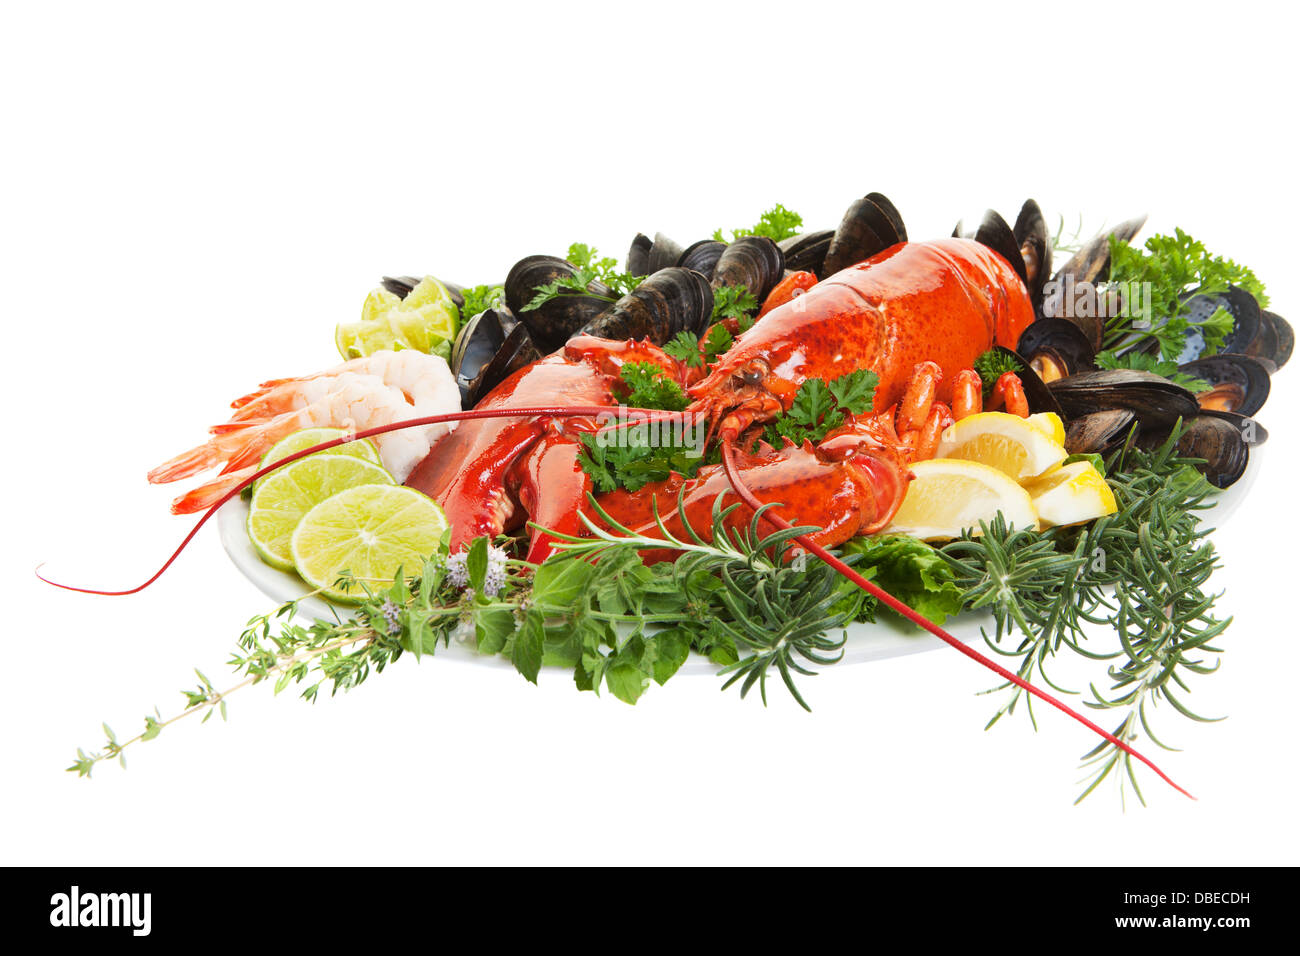 Plat de fruits de mer frais avec le homard sur un fond blanc Banque D'Images